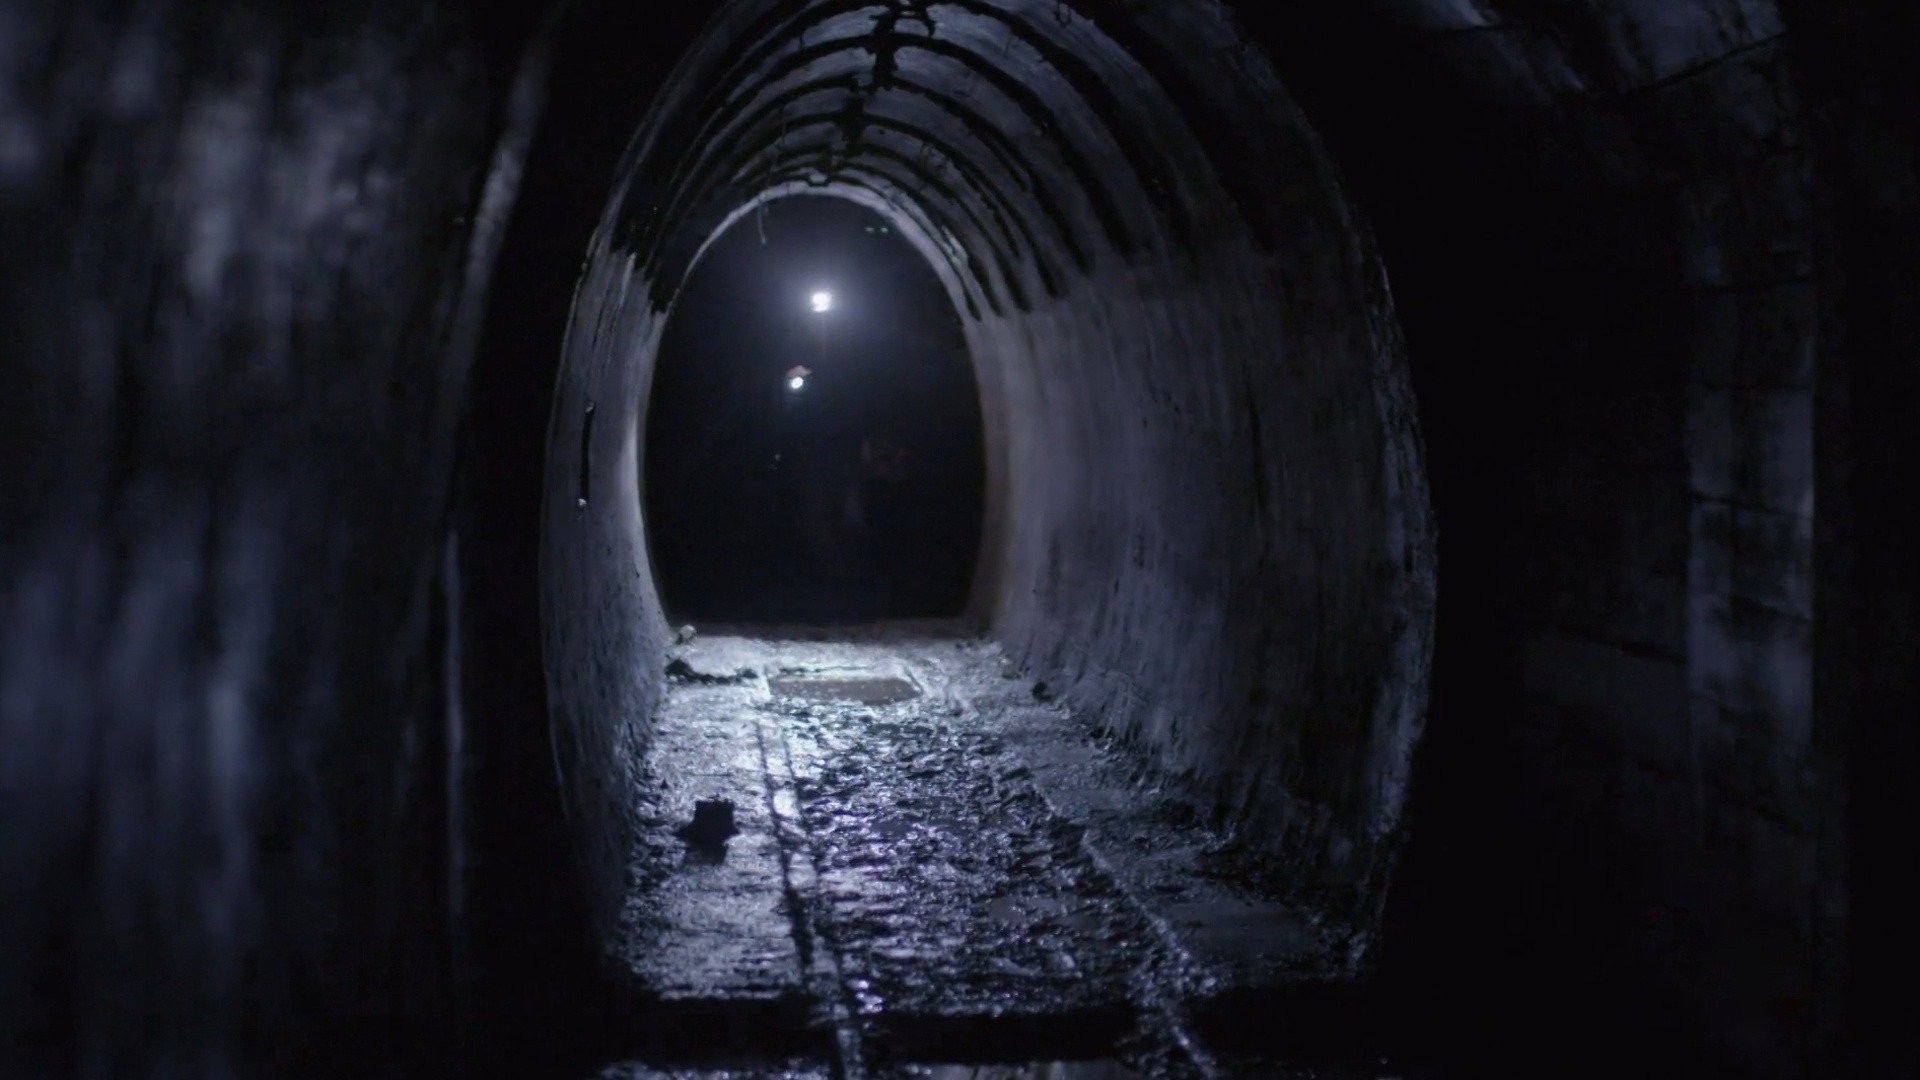 3. Murder Tunnels